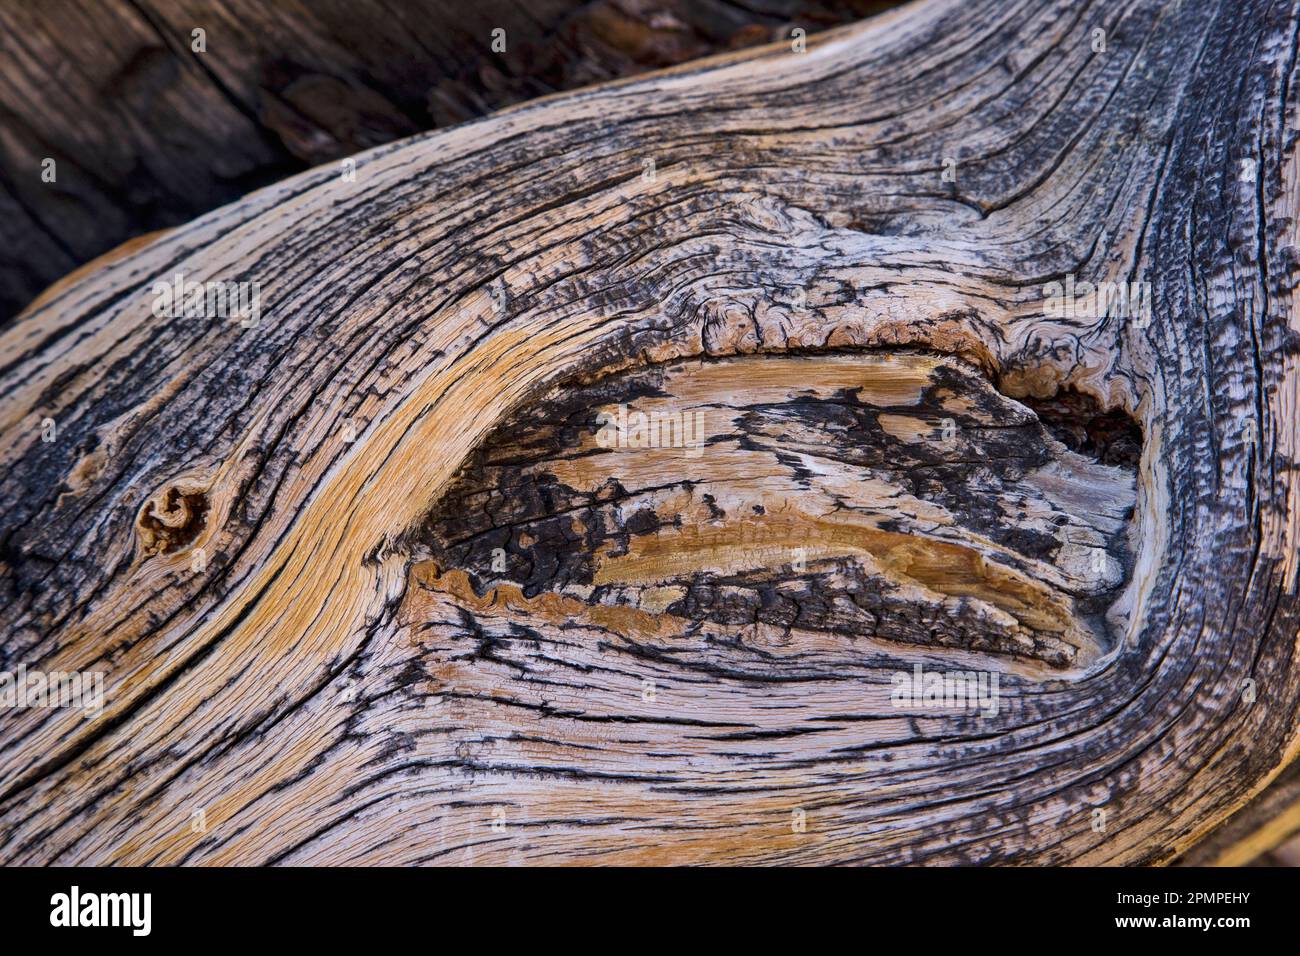 Profils d'anneaux d'arbres dans le parc national de la Vallée de la mort, Californie, États-Unis ; Californie, États-Unis d'Amérique Banque D'Images